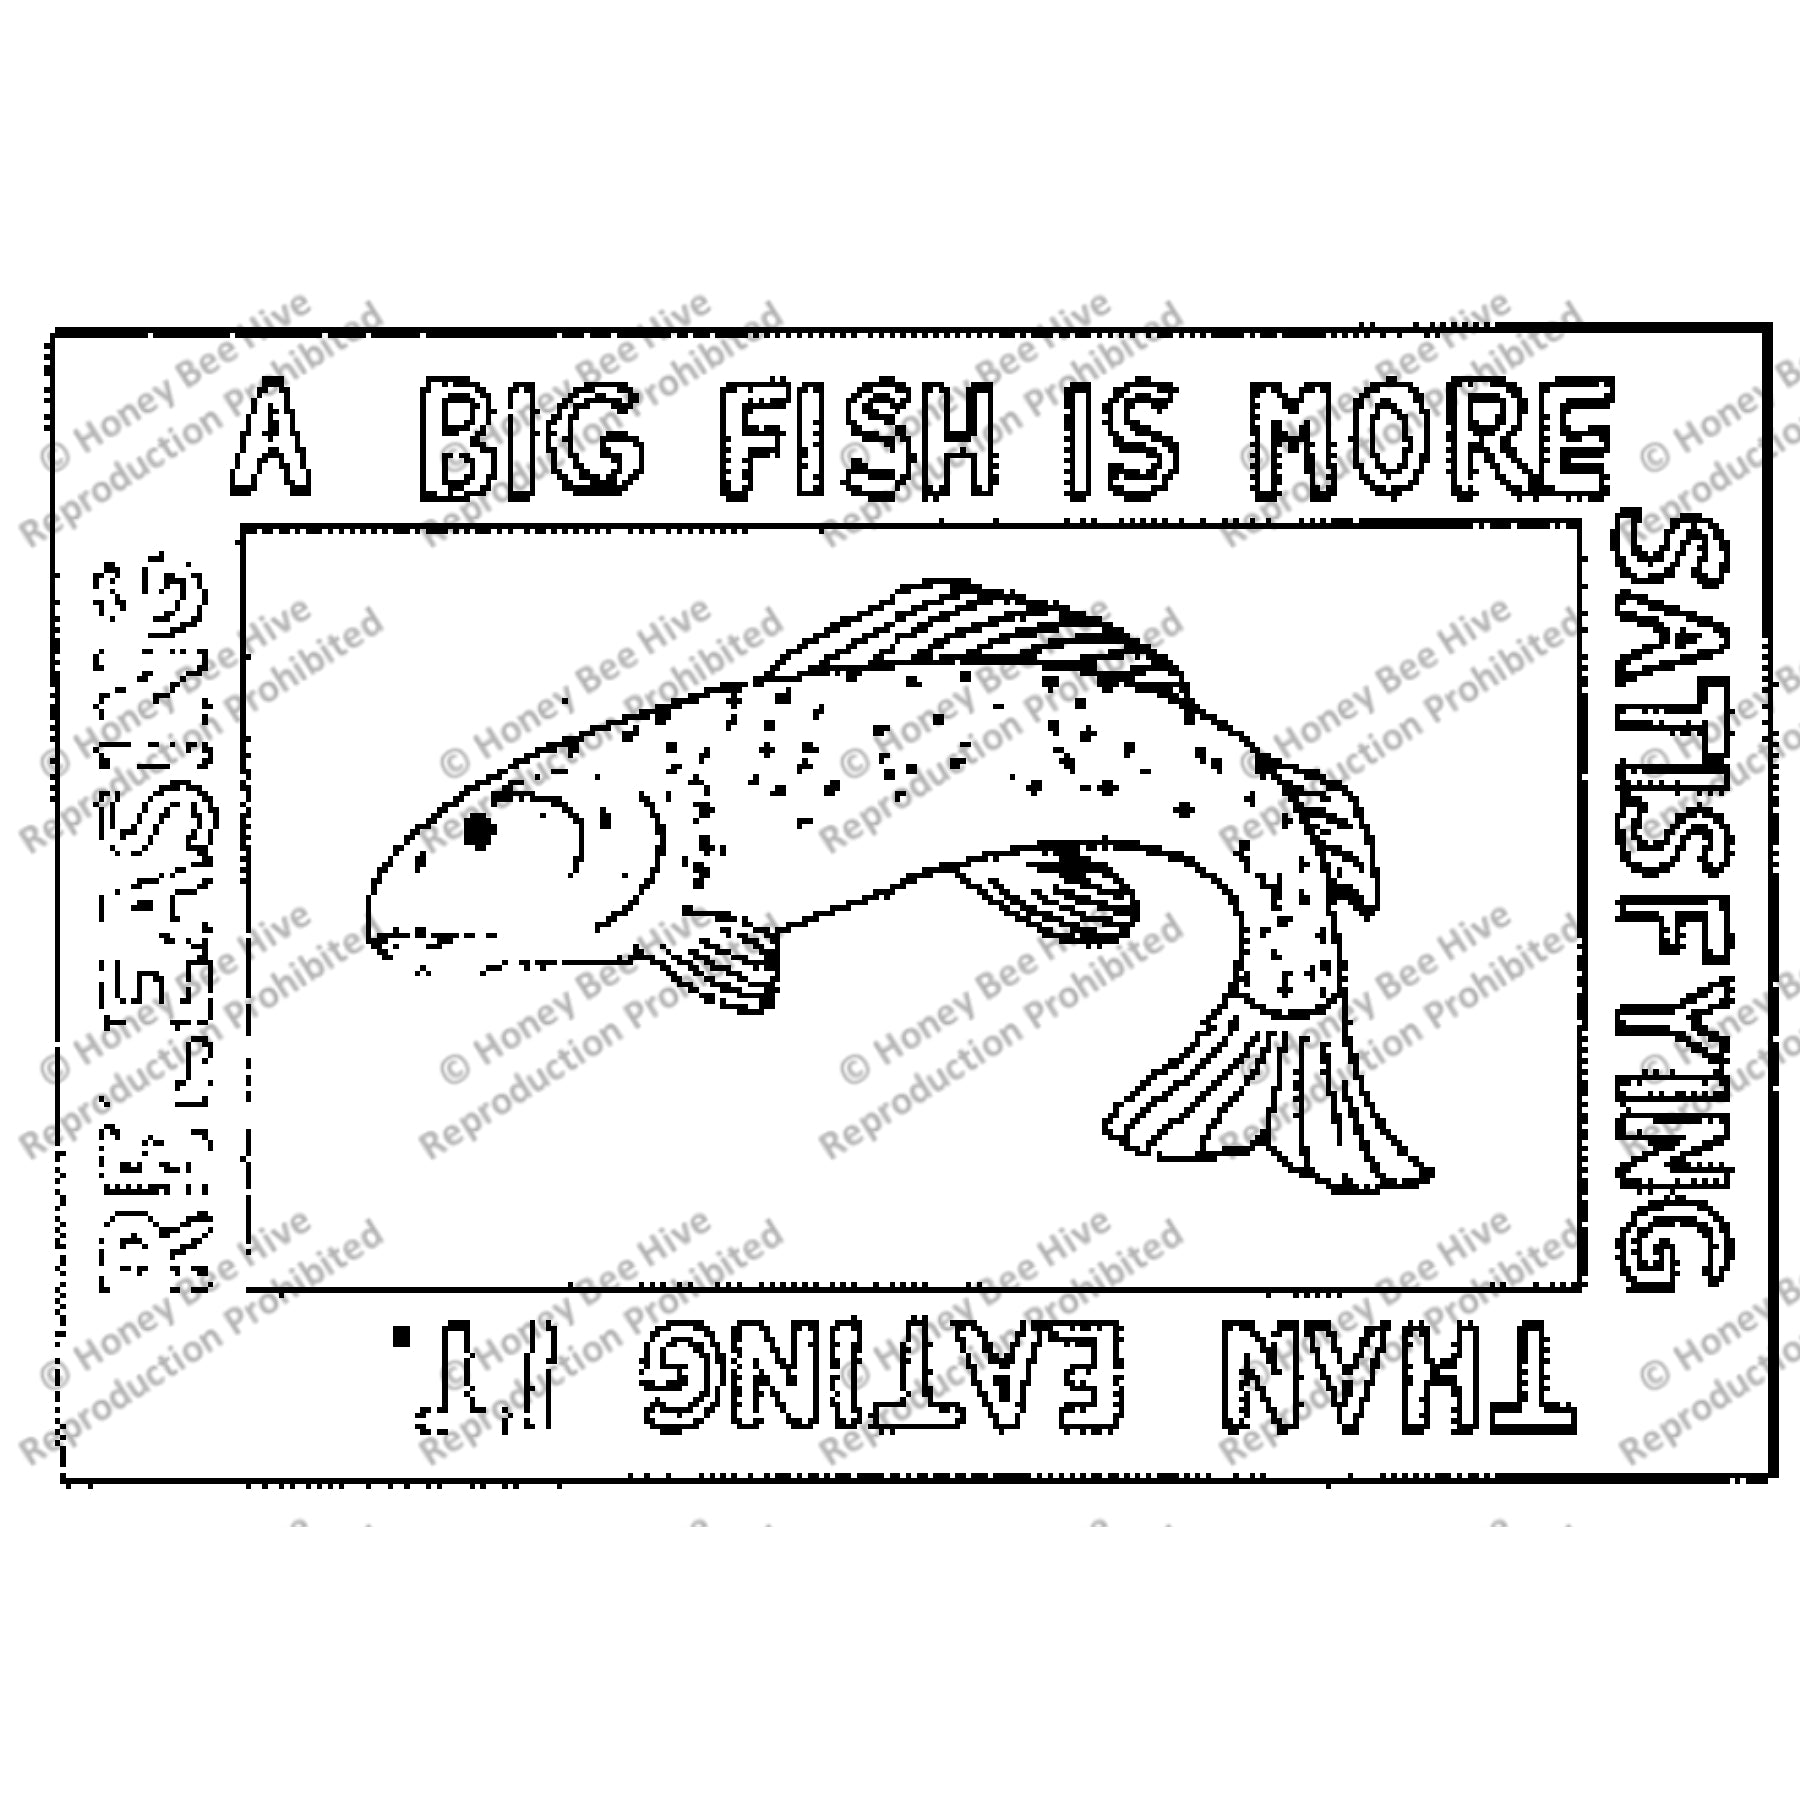 Big Fish, rug hooking pattern